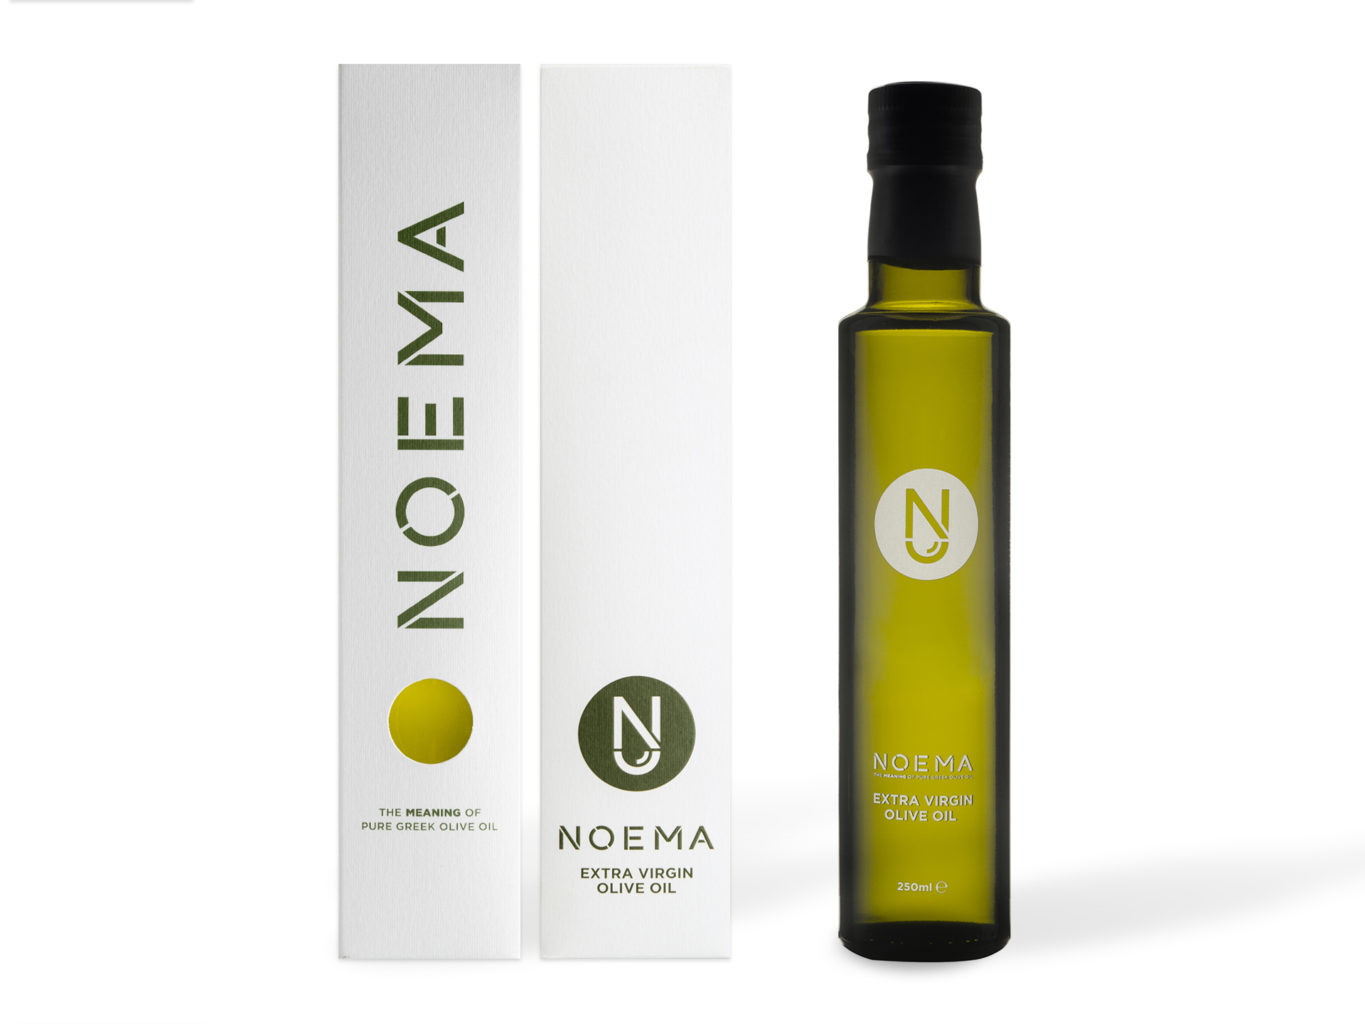 Noema Extra Virgin Olive Oil packaging